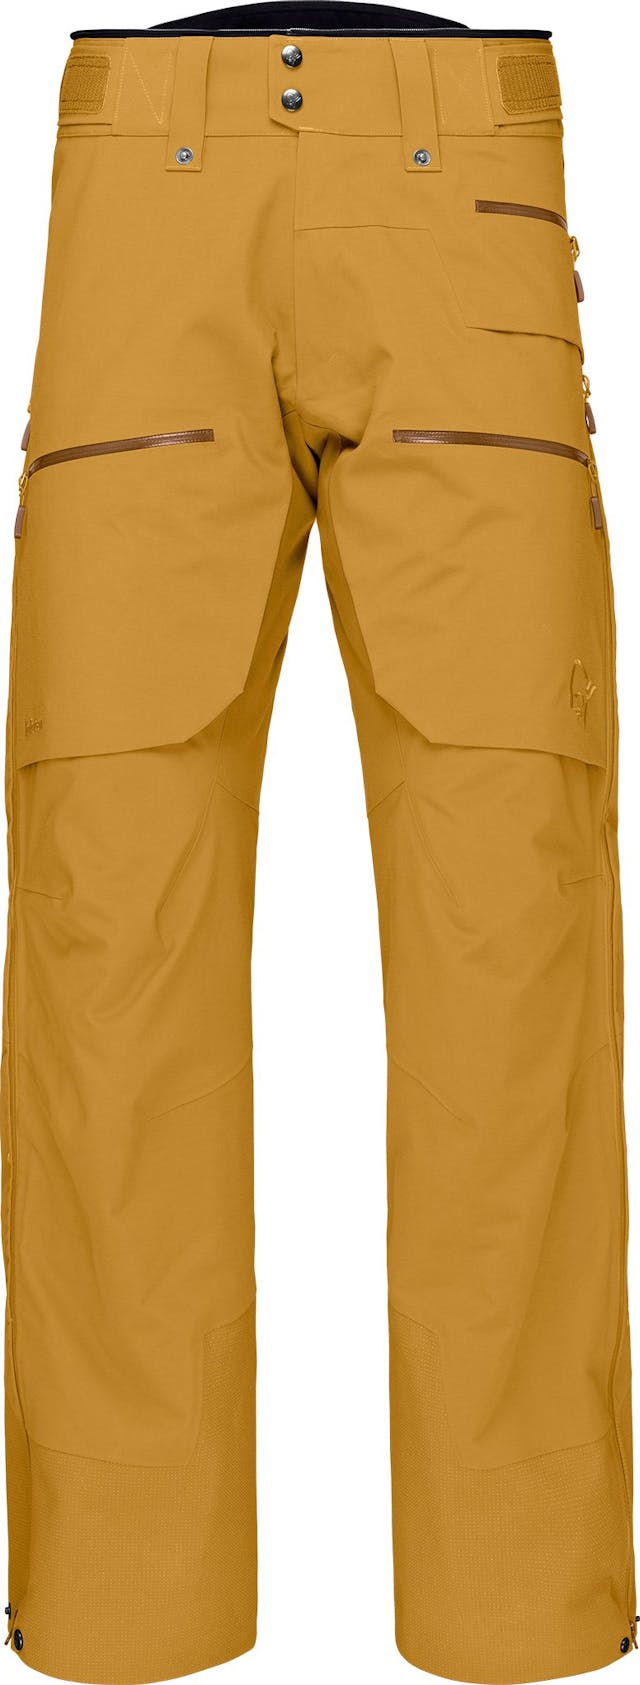 Product image for Lofoten Gore-Tex Pro Pants - Men's